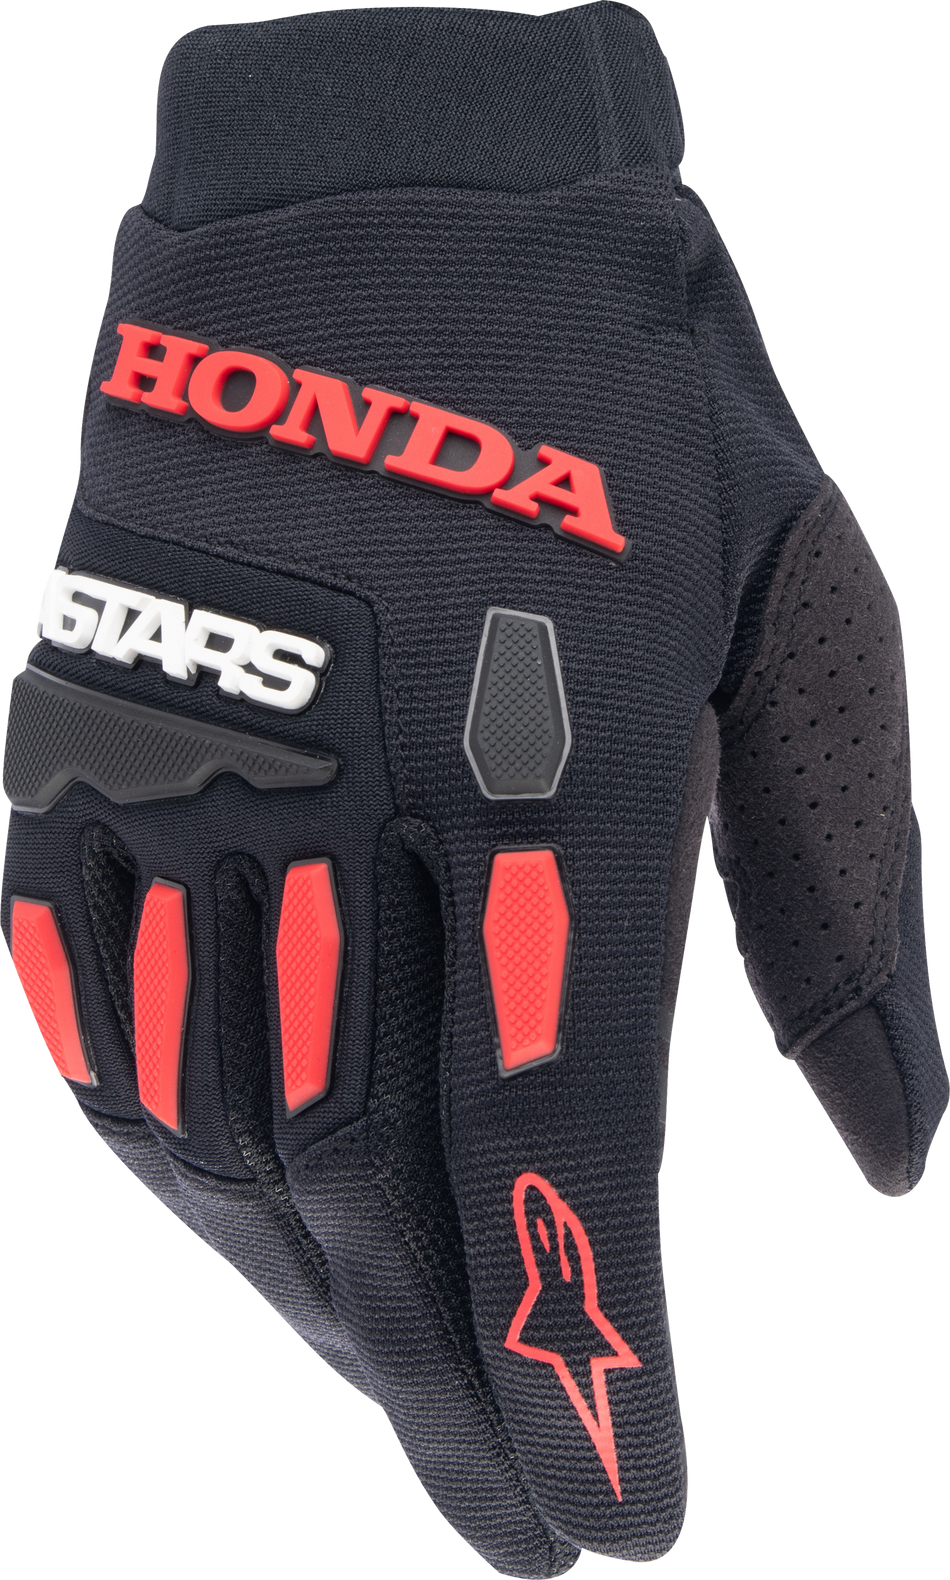 ALPINESTARS Honda Full Bore Gloves Black/Bright Red Lg 3563823-1303-L